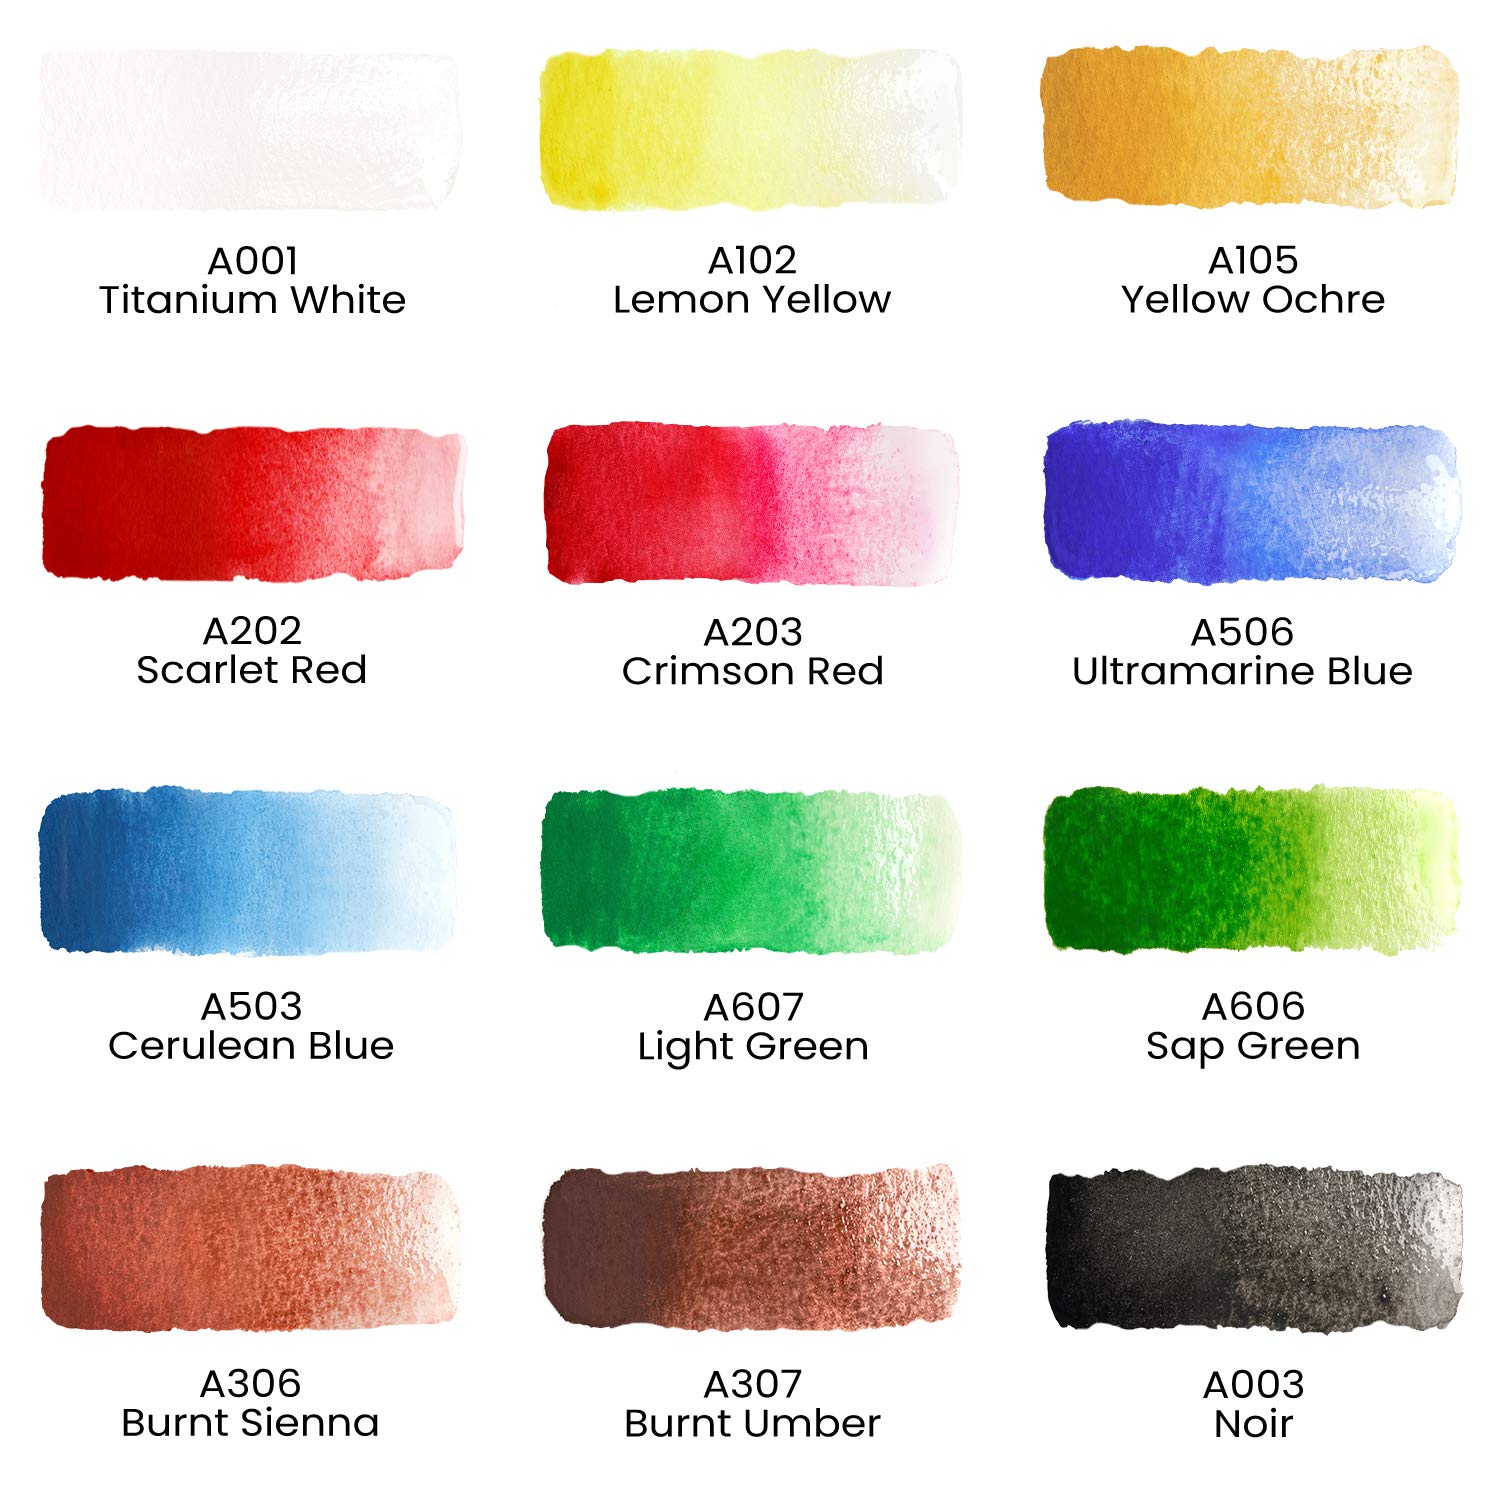 Arteza Kids Premium Watercolor Paint Set, 25 Vibrant Color Cakes, Includes Paint